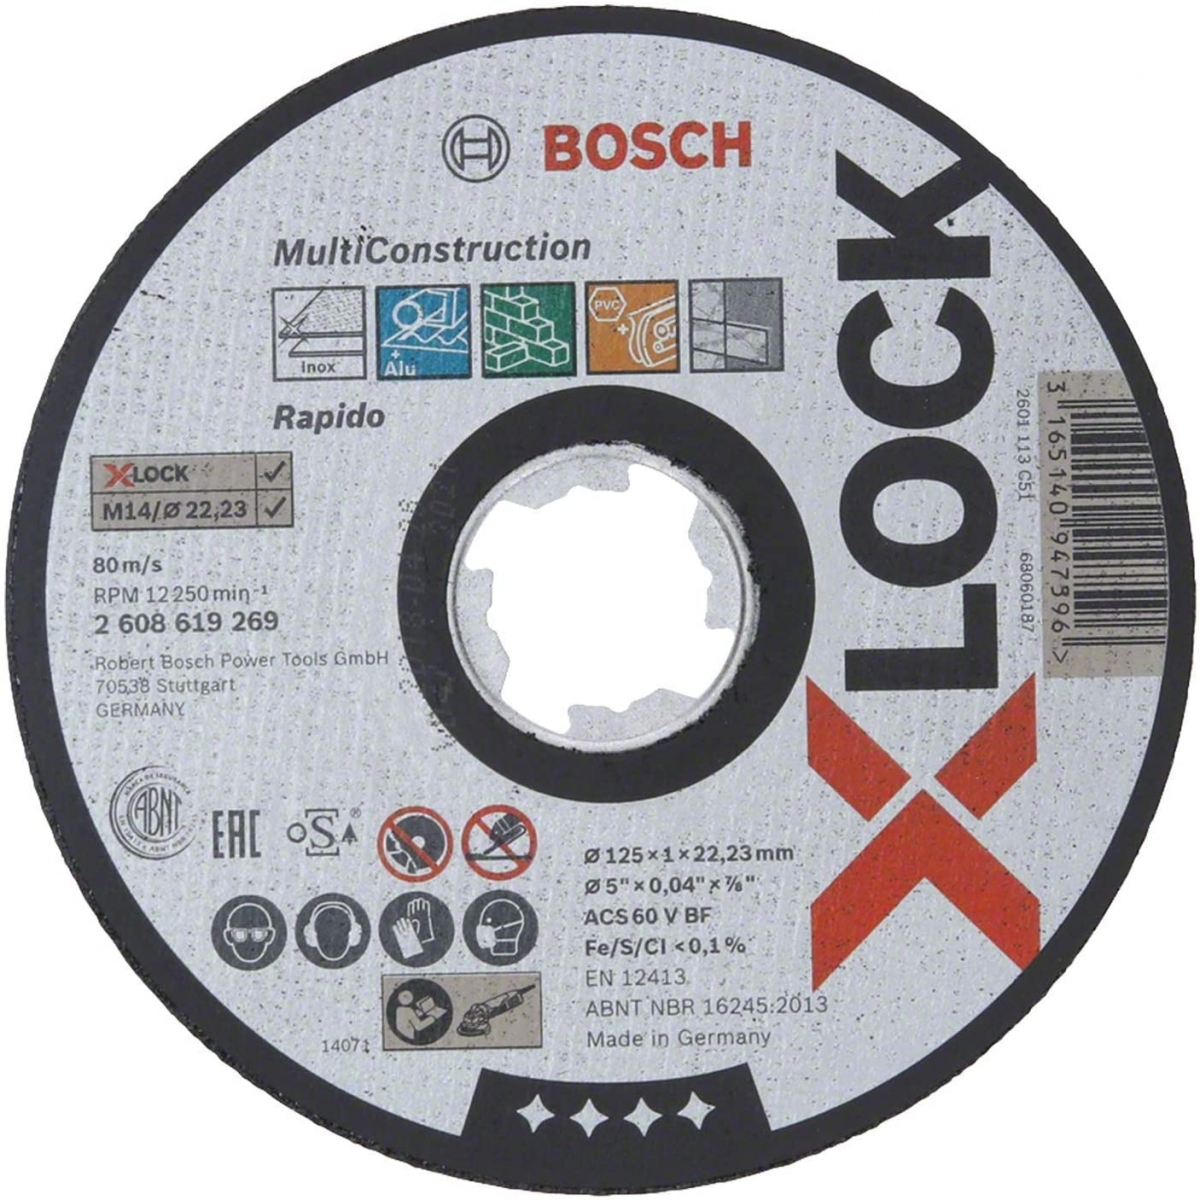 Bosch Disco Multiconstruccion X-Lock 125X1Mm 2608619269 - Comprar Discos Bosch a buen precio.